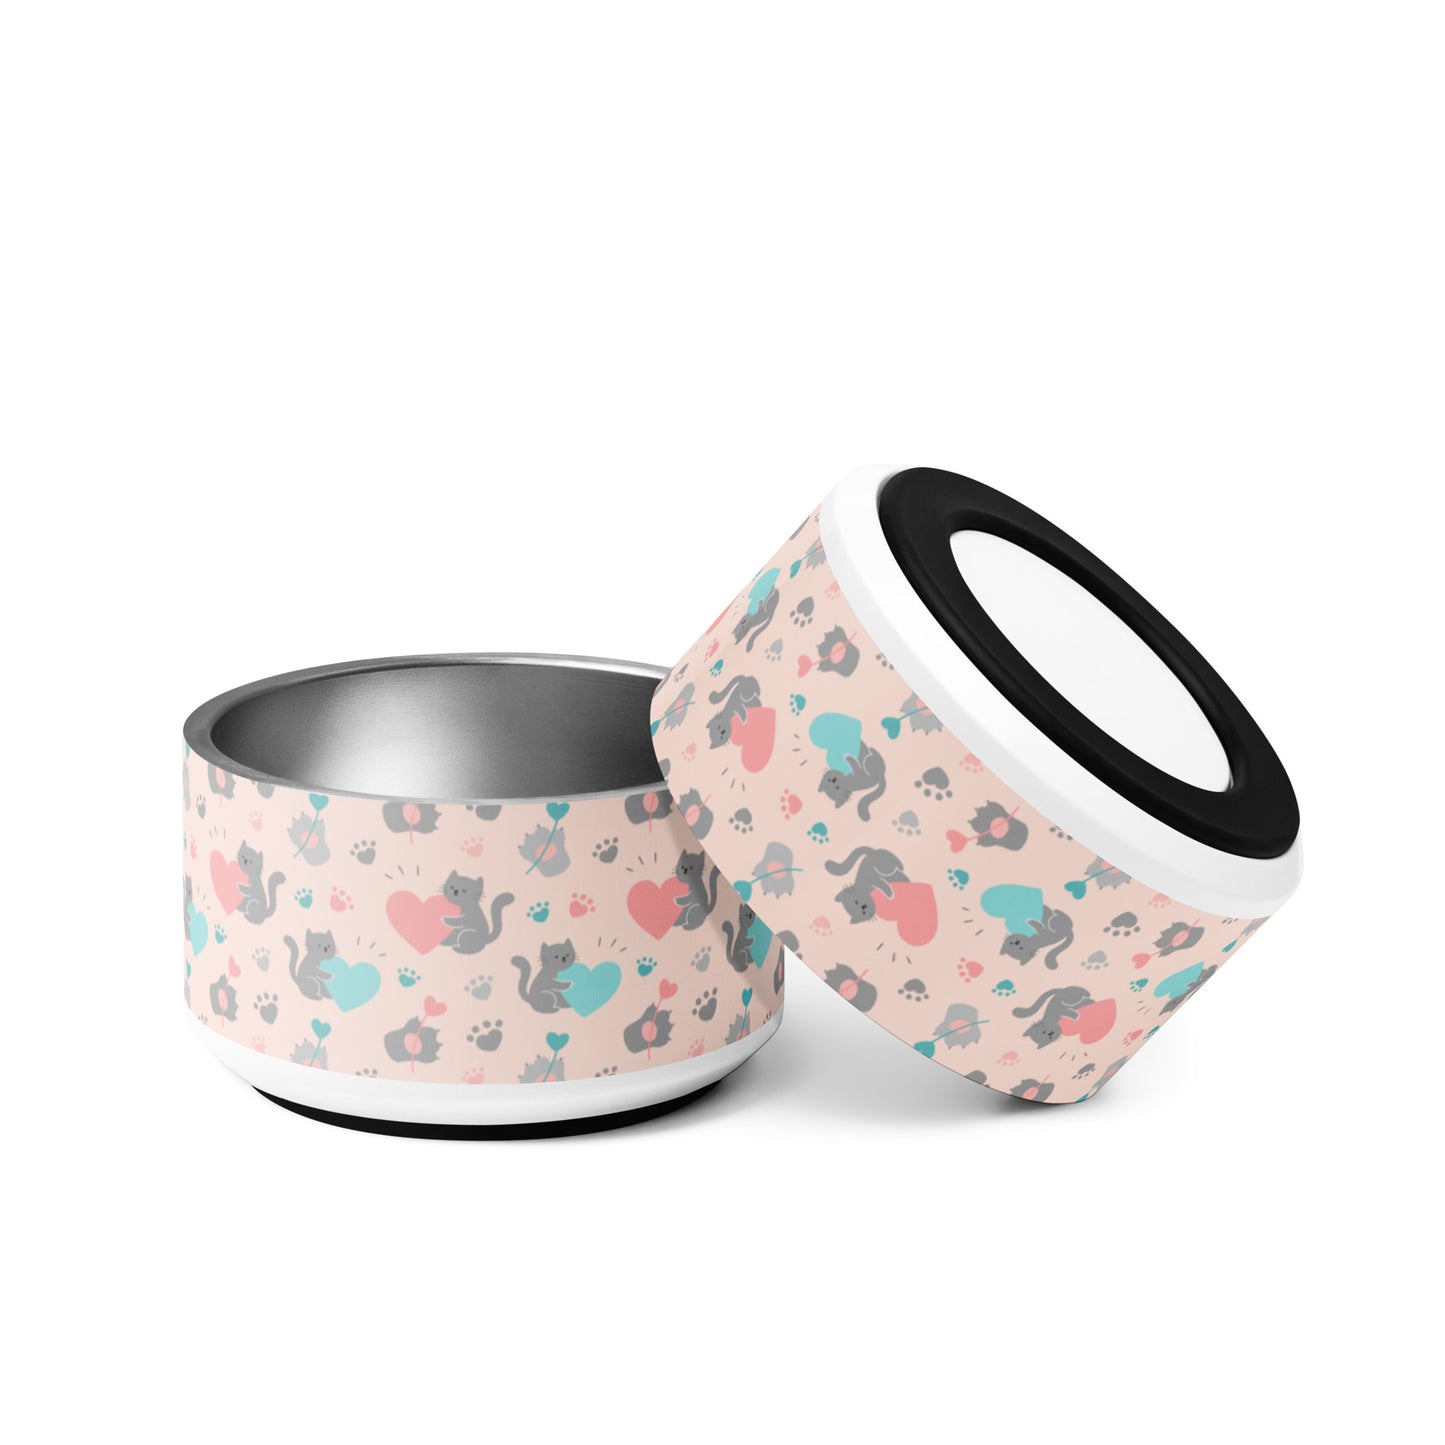 Niccie's Premium Ceramic Cat Pattern Pet Bowl - Elevated Design for Feline Comfort